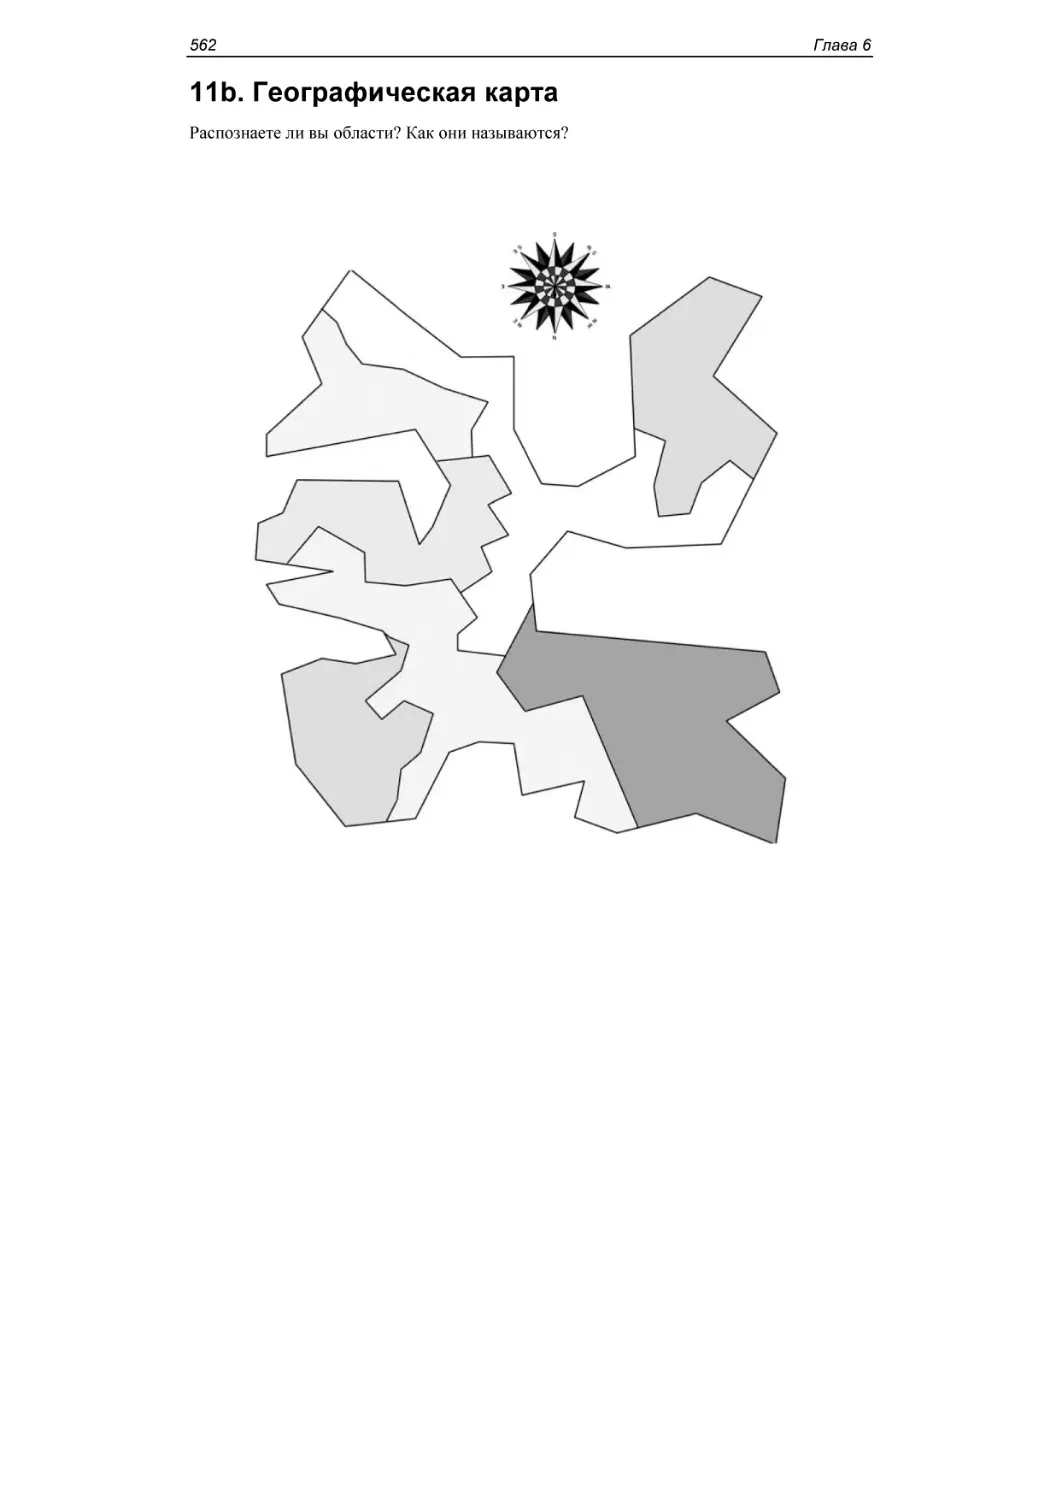 11b. Географическая карта